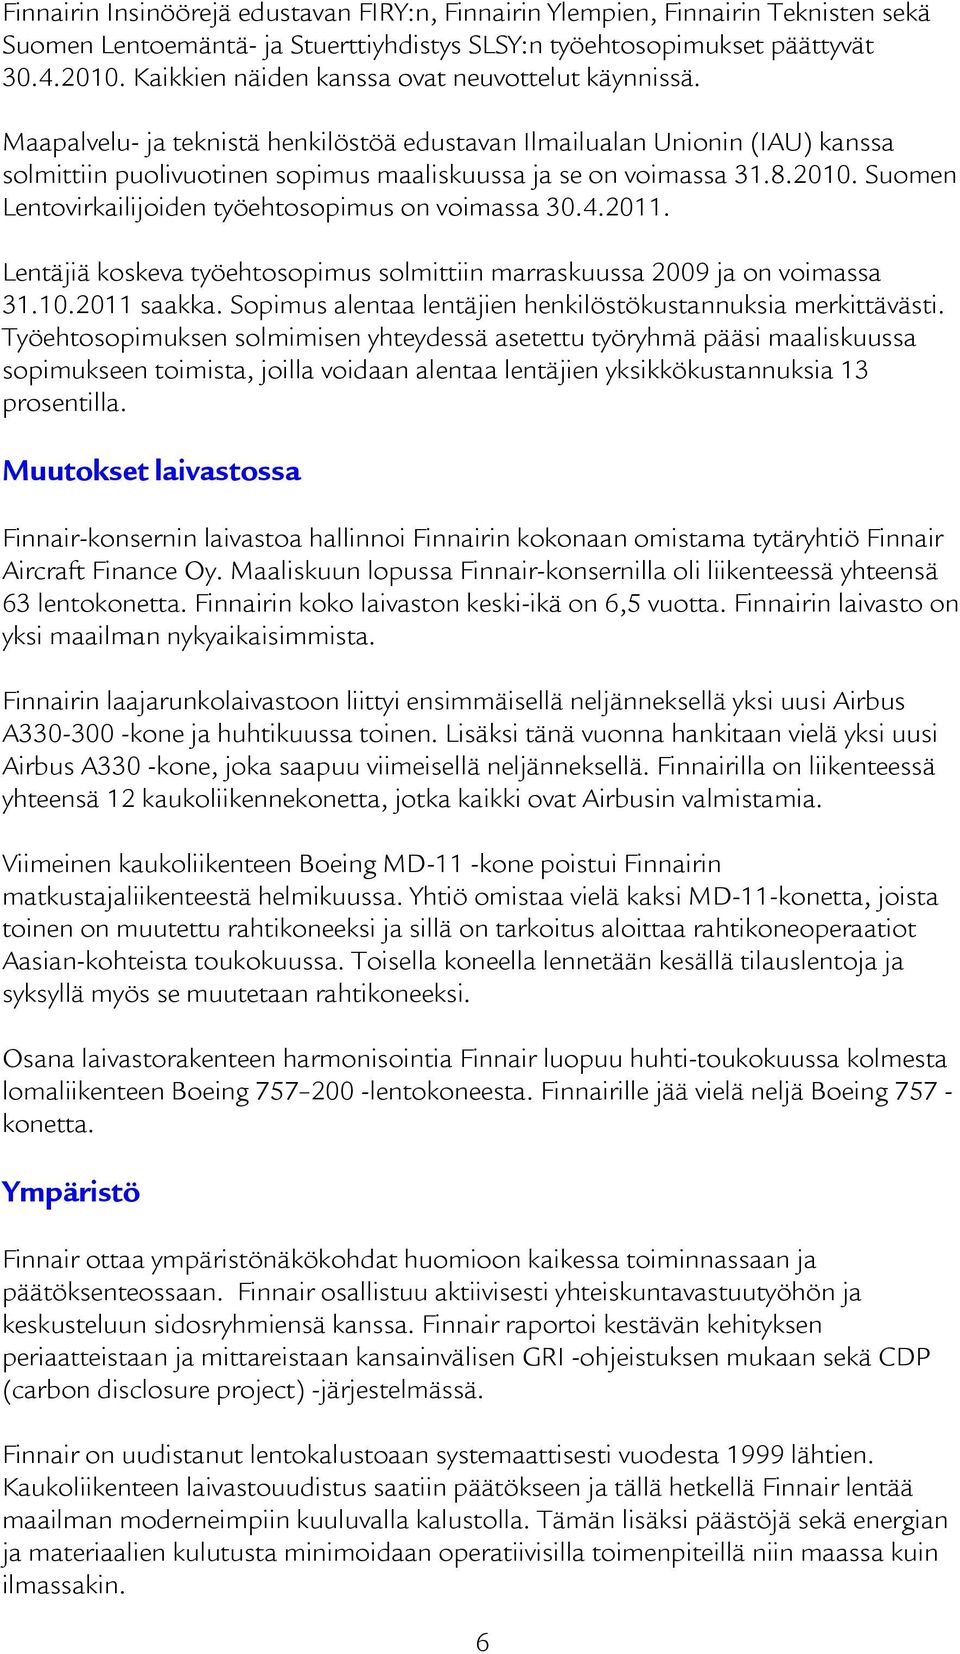 2010. Suomen Lentovirkailijoiden työehtosopimus on voimassa 30.4.2011. Lentäjiä koskeva työehtosopimus solmittiin marraskuussa 2009 ja on voimassa 31.10.2011 saakka.